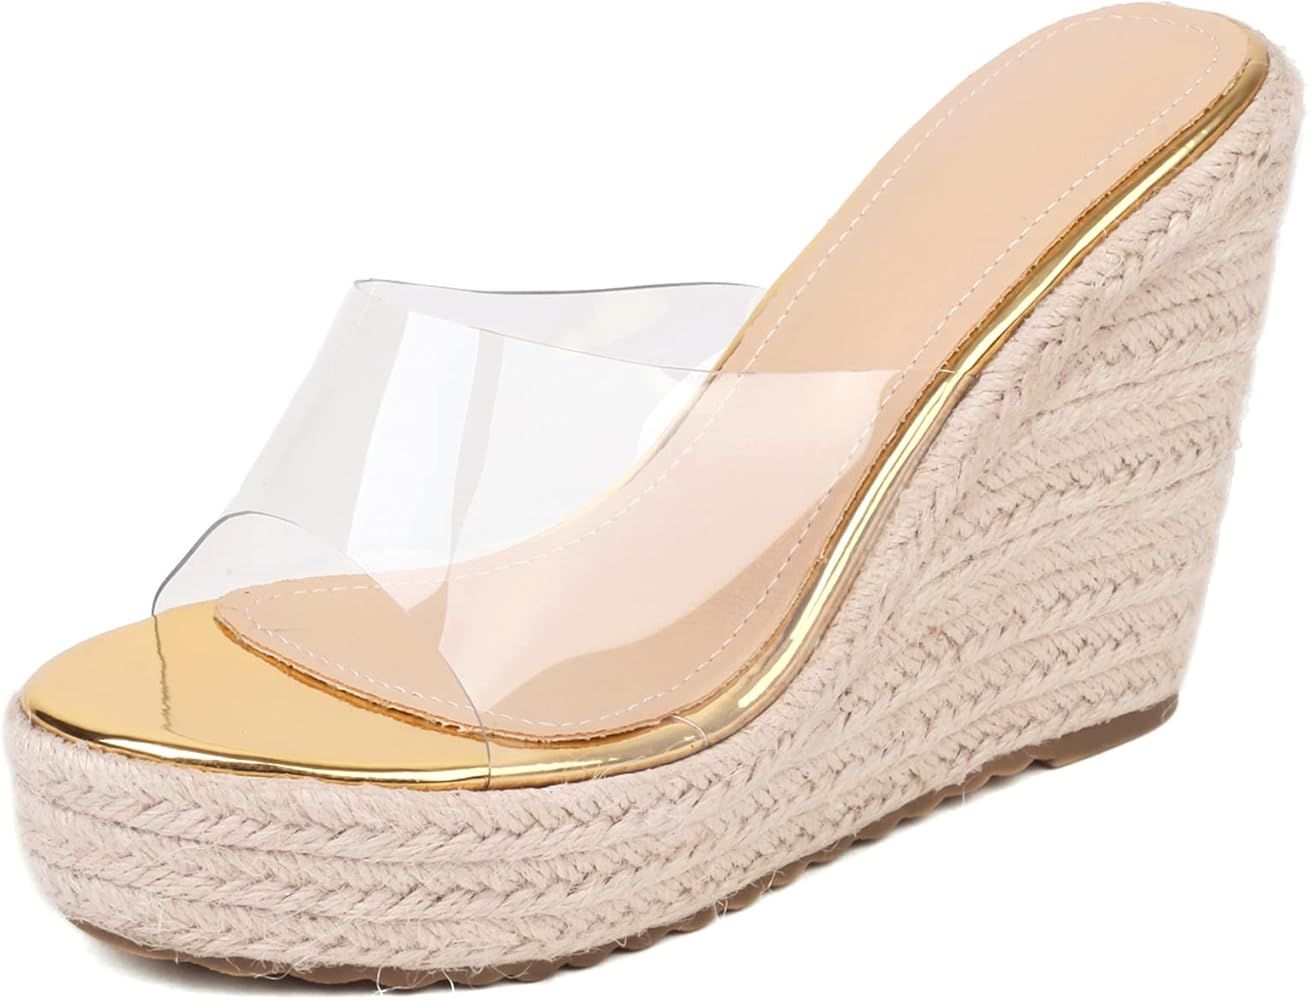 VARECOLA Slip On Espadrilles Wedge Platform Sandals For Women Clear Strap Slide Heeled Sandals Be... | Amazon (US)